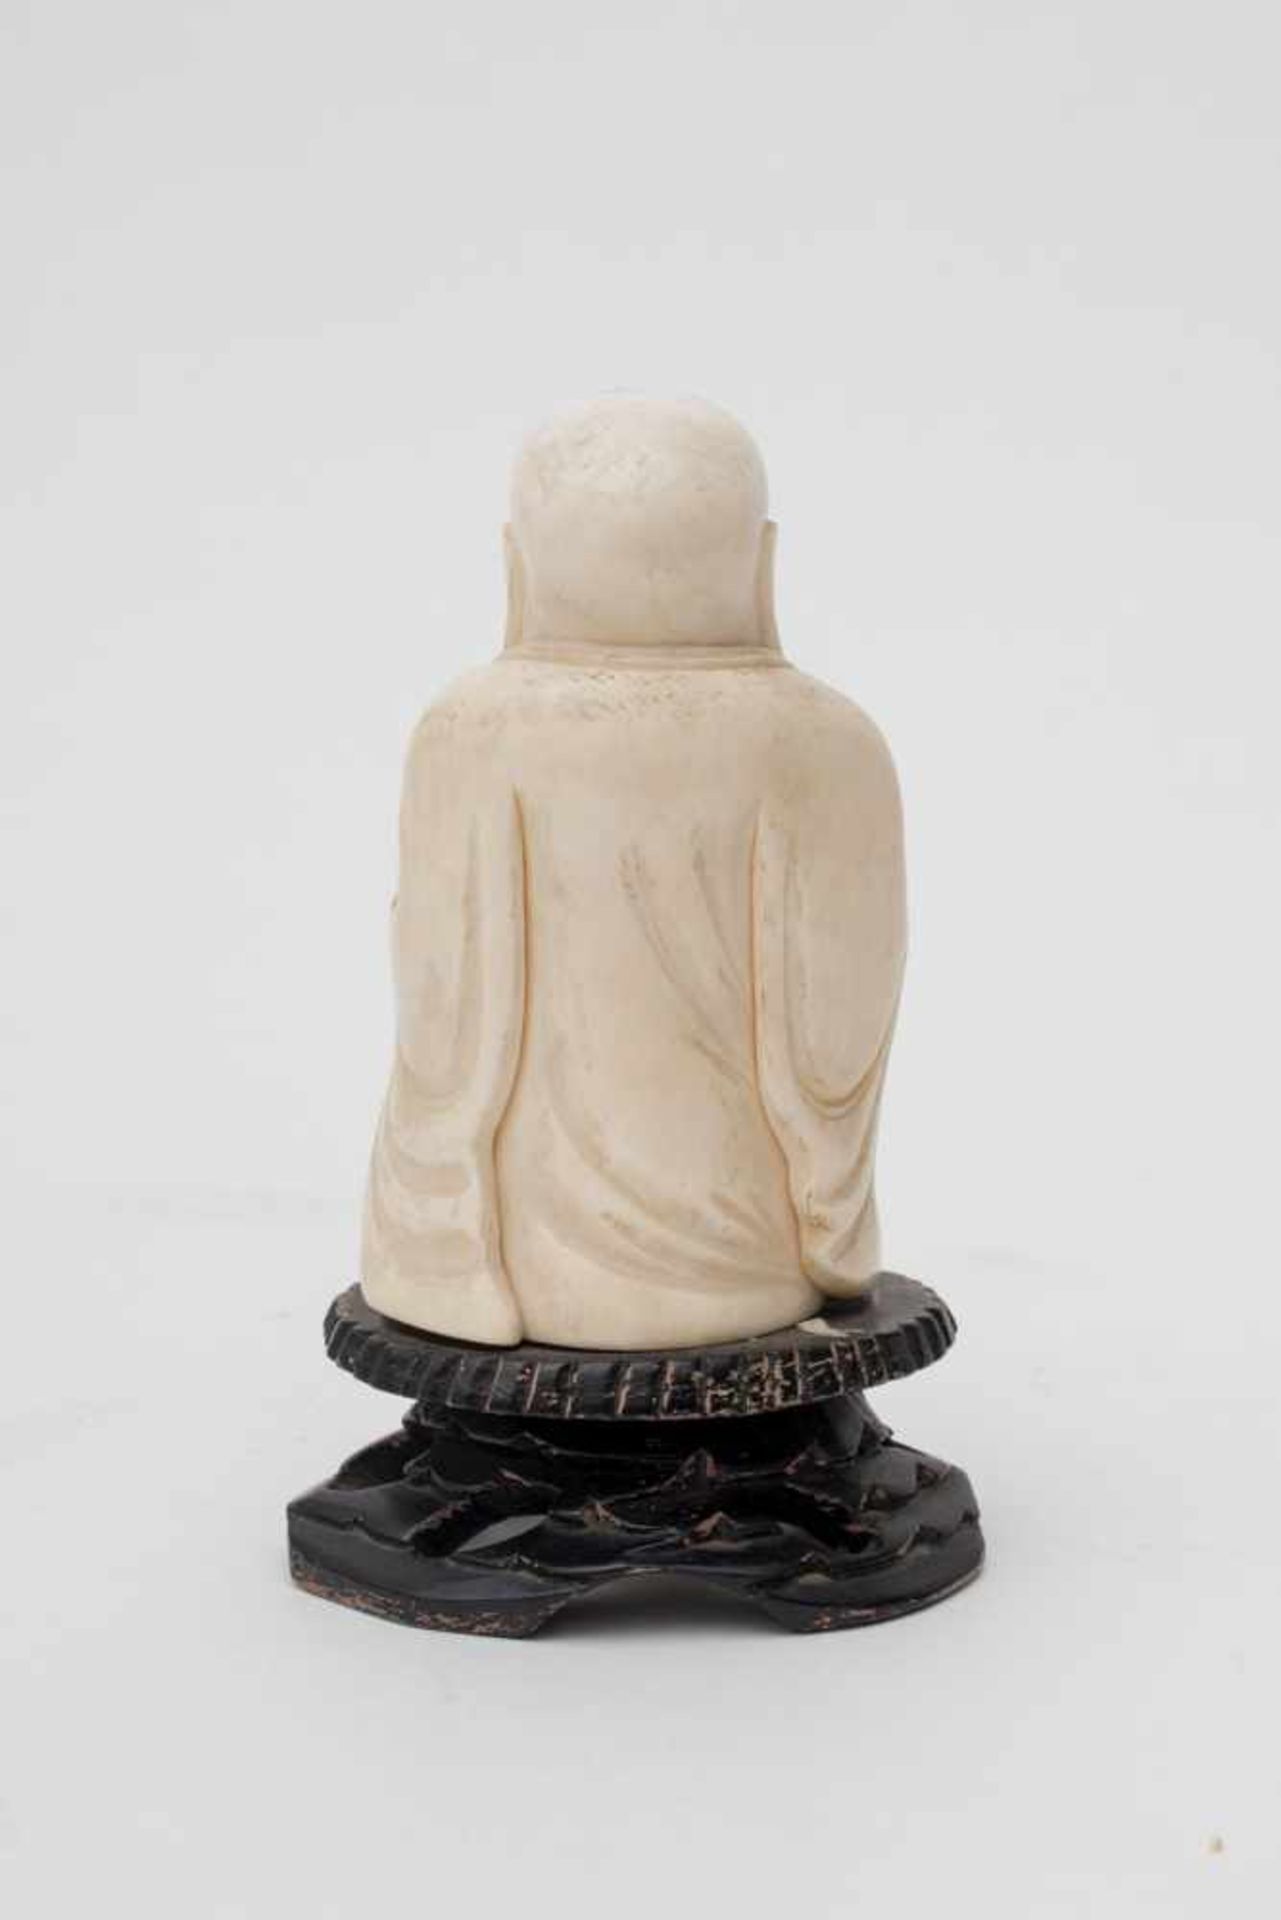 Chine - Budaï d'ivoire - Fixé sur socle de bois. Fin XIXe - début XXe. - H 14 [...] - Image 7 of 8